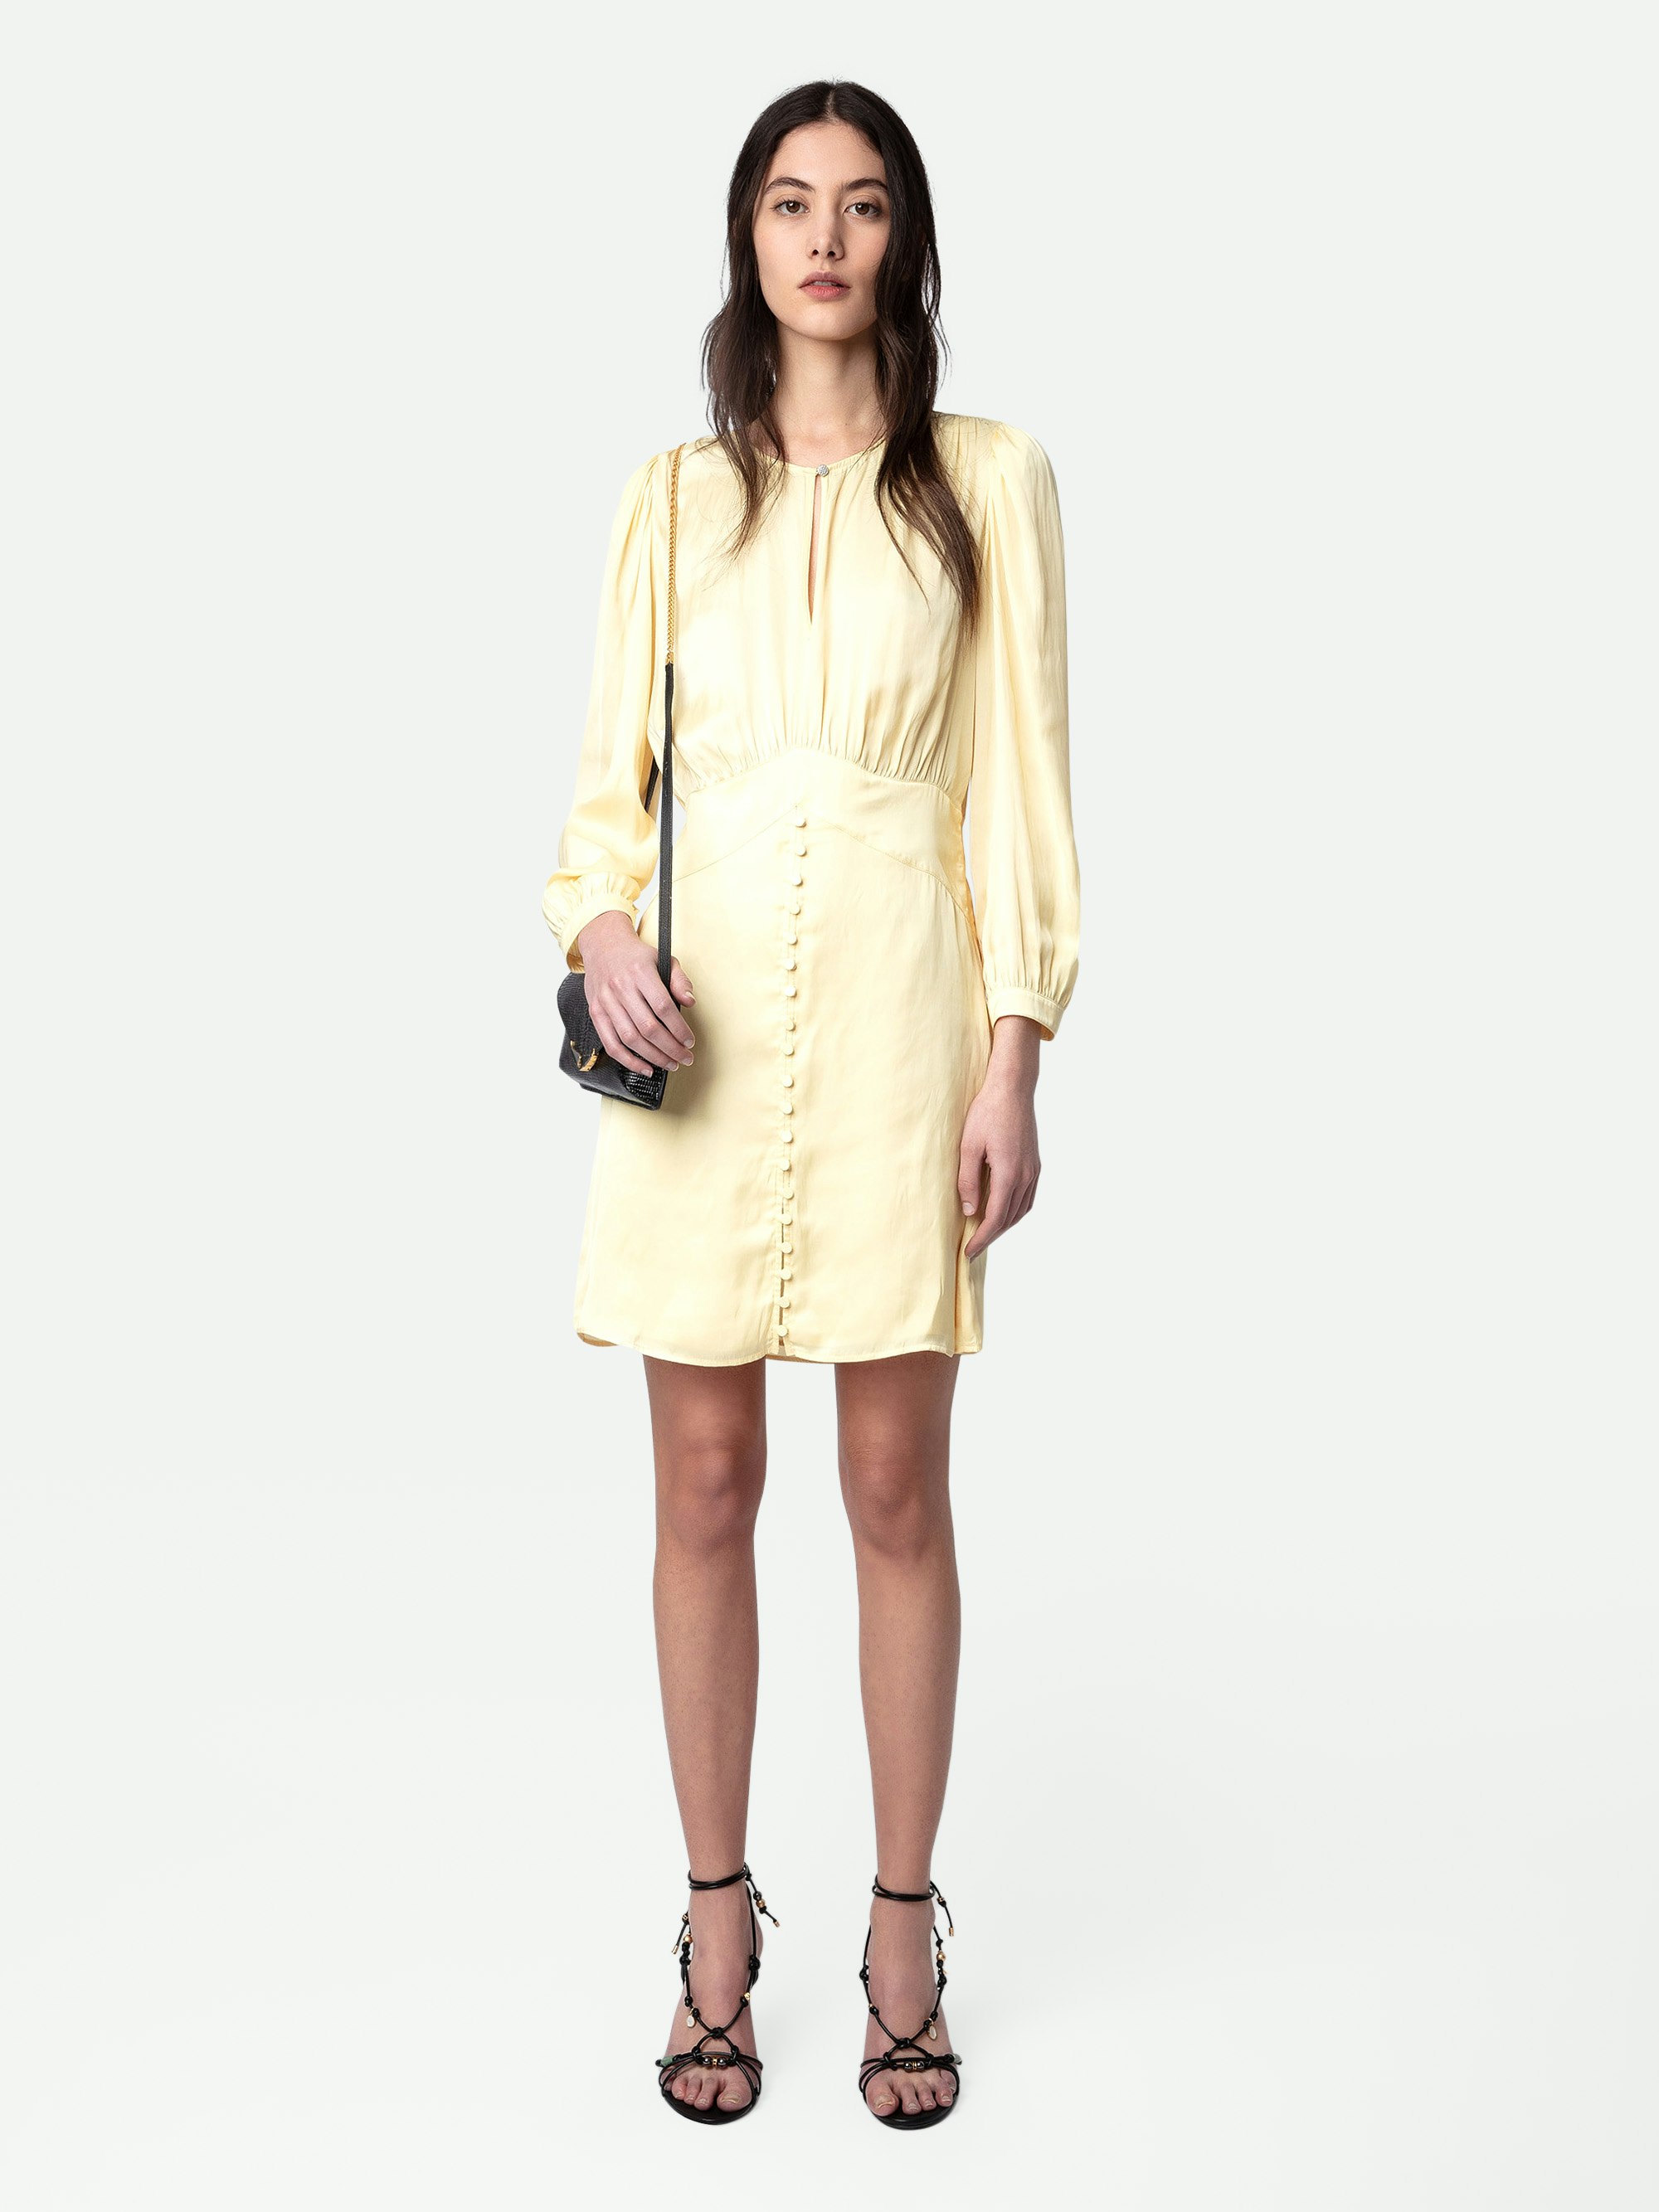 Vestido de Satén Rhodri - Vestido corto abotonado de satén en color amarillo claro con mangas 3/4.